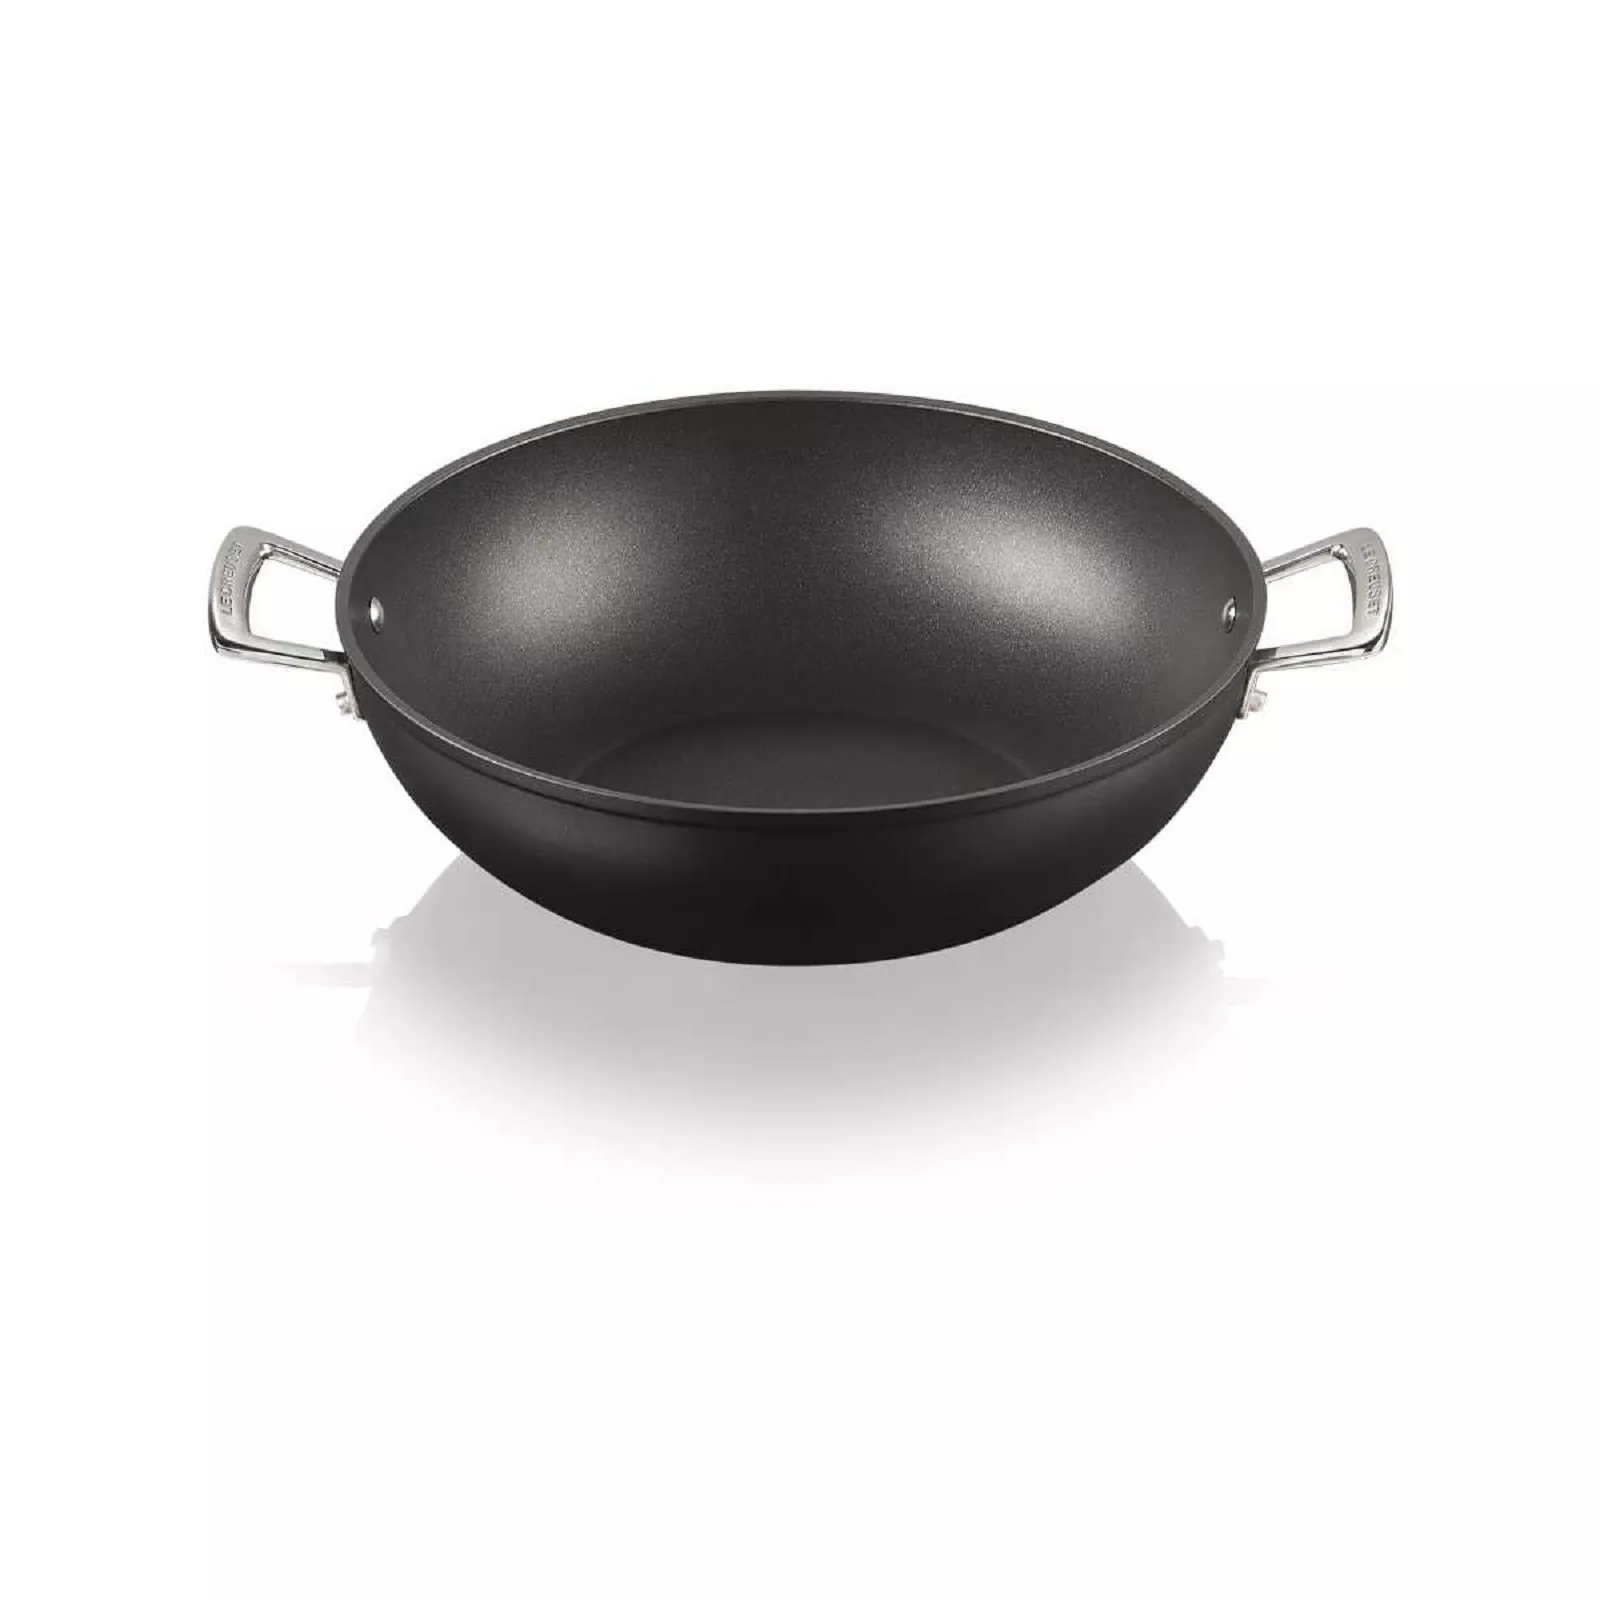 Вок антипригарный Le Creuset Tns & Cast Alu Black, диаметр 32 см (51105320010502) - Фото nav 1